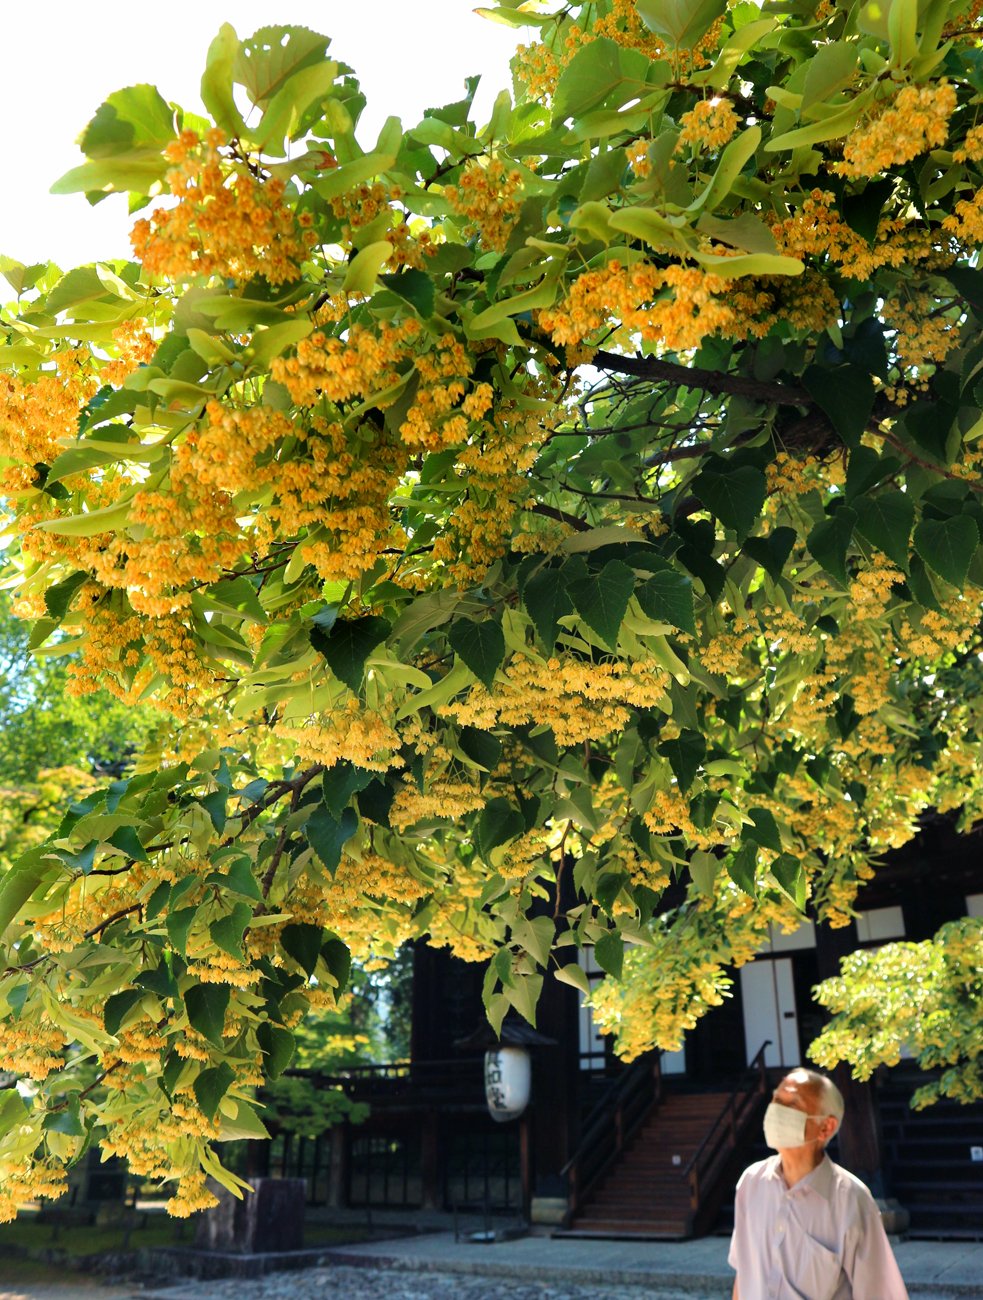 境内に甘い香り 菩提樹 の花が見頃 京都 真如堂 社会 地域のニュース 京都新聞